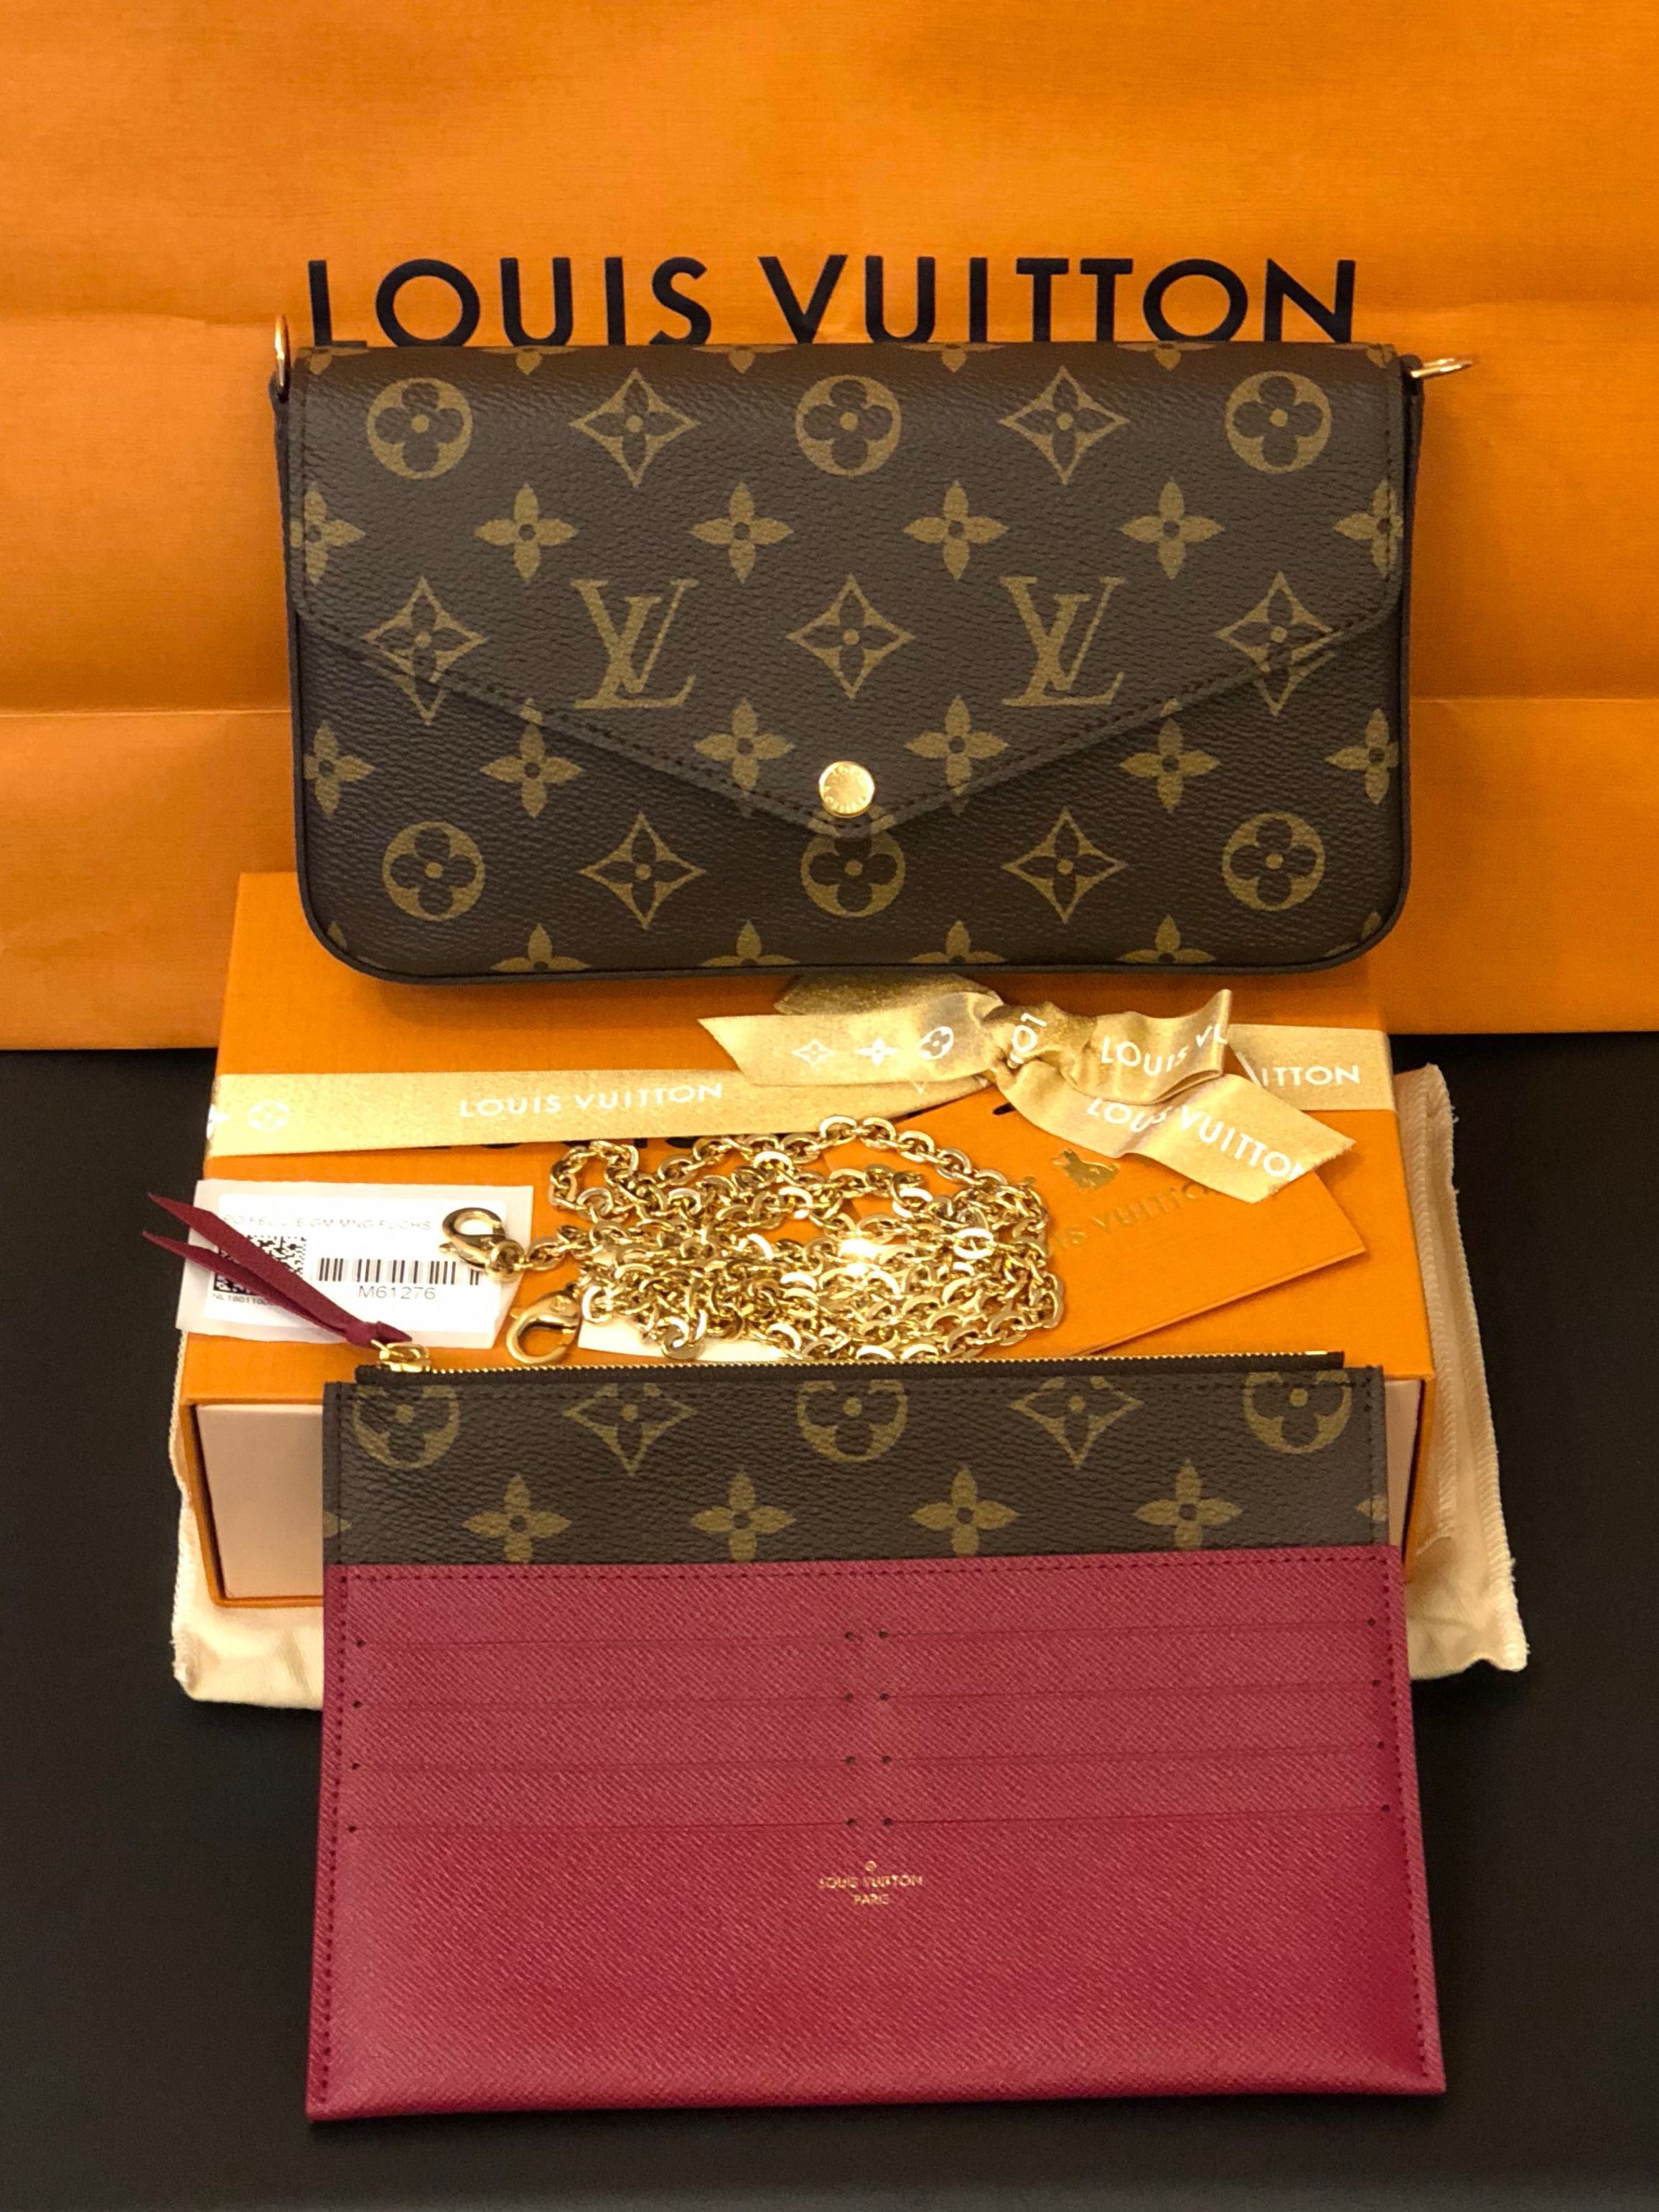 Louis Vuitton Felicie fake or not?